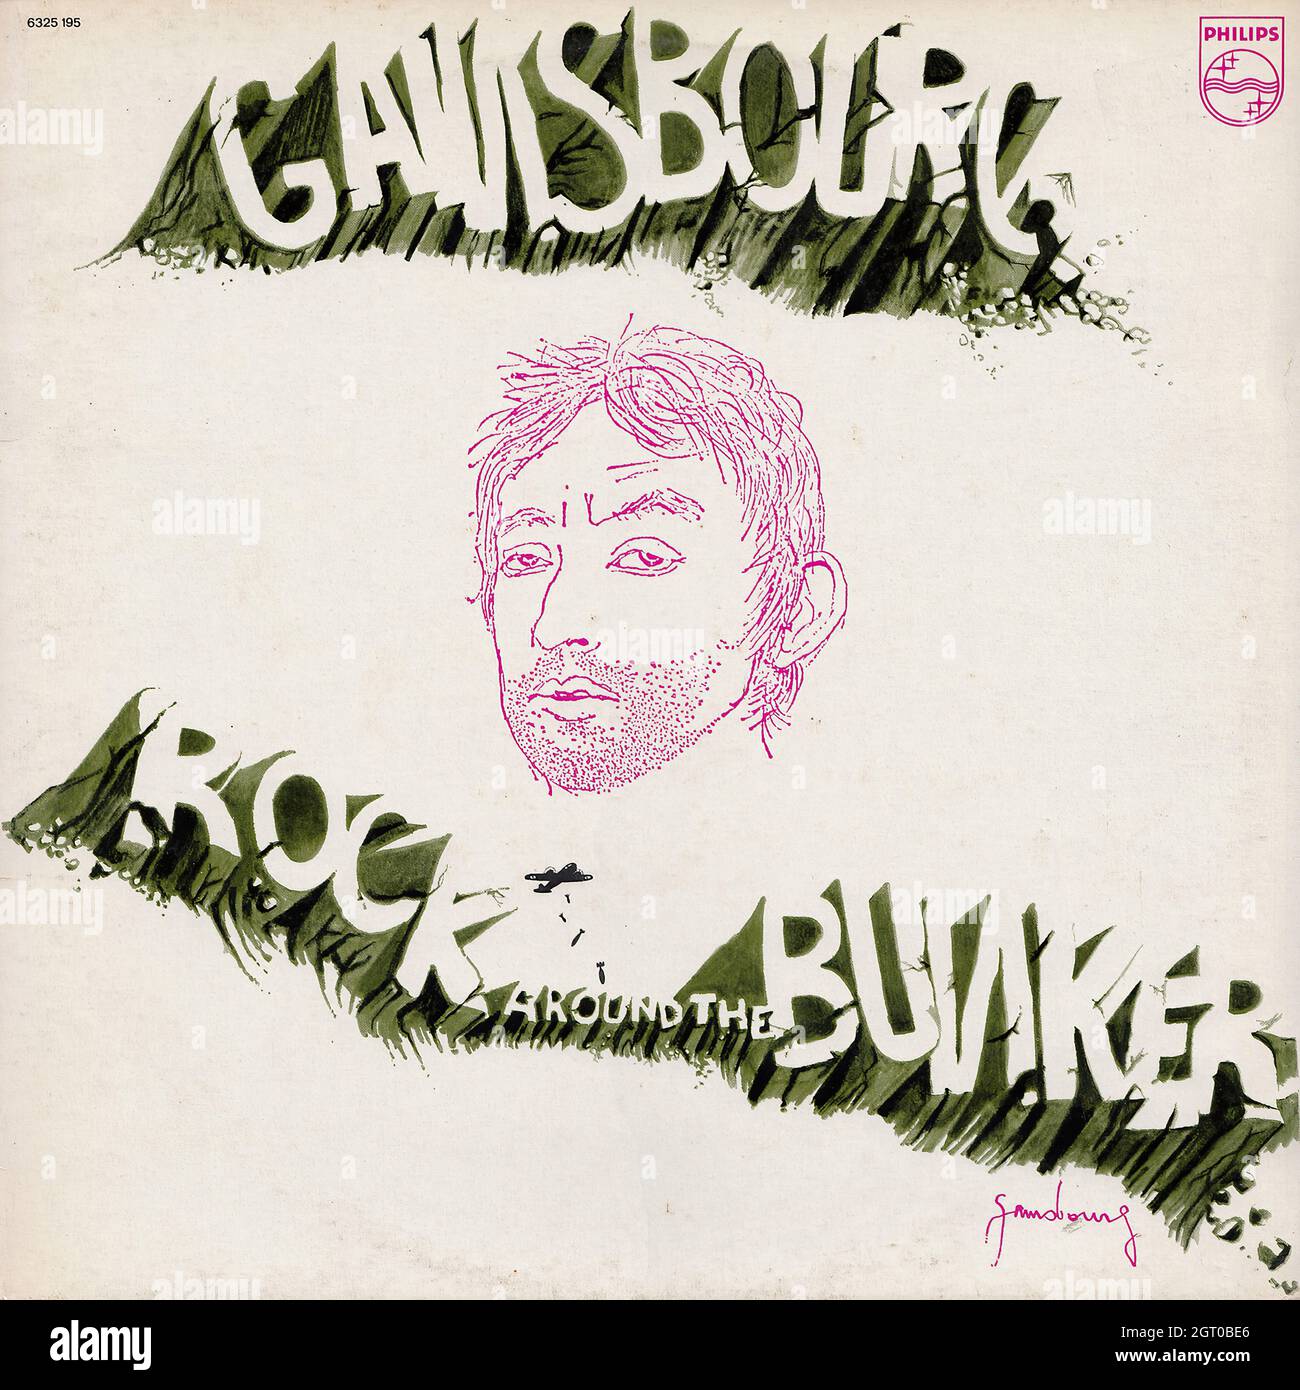 Serge Gainsbourg - Rock autour du bunker - Vintage Vinyl Record Cover Banque D'Images